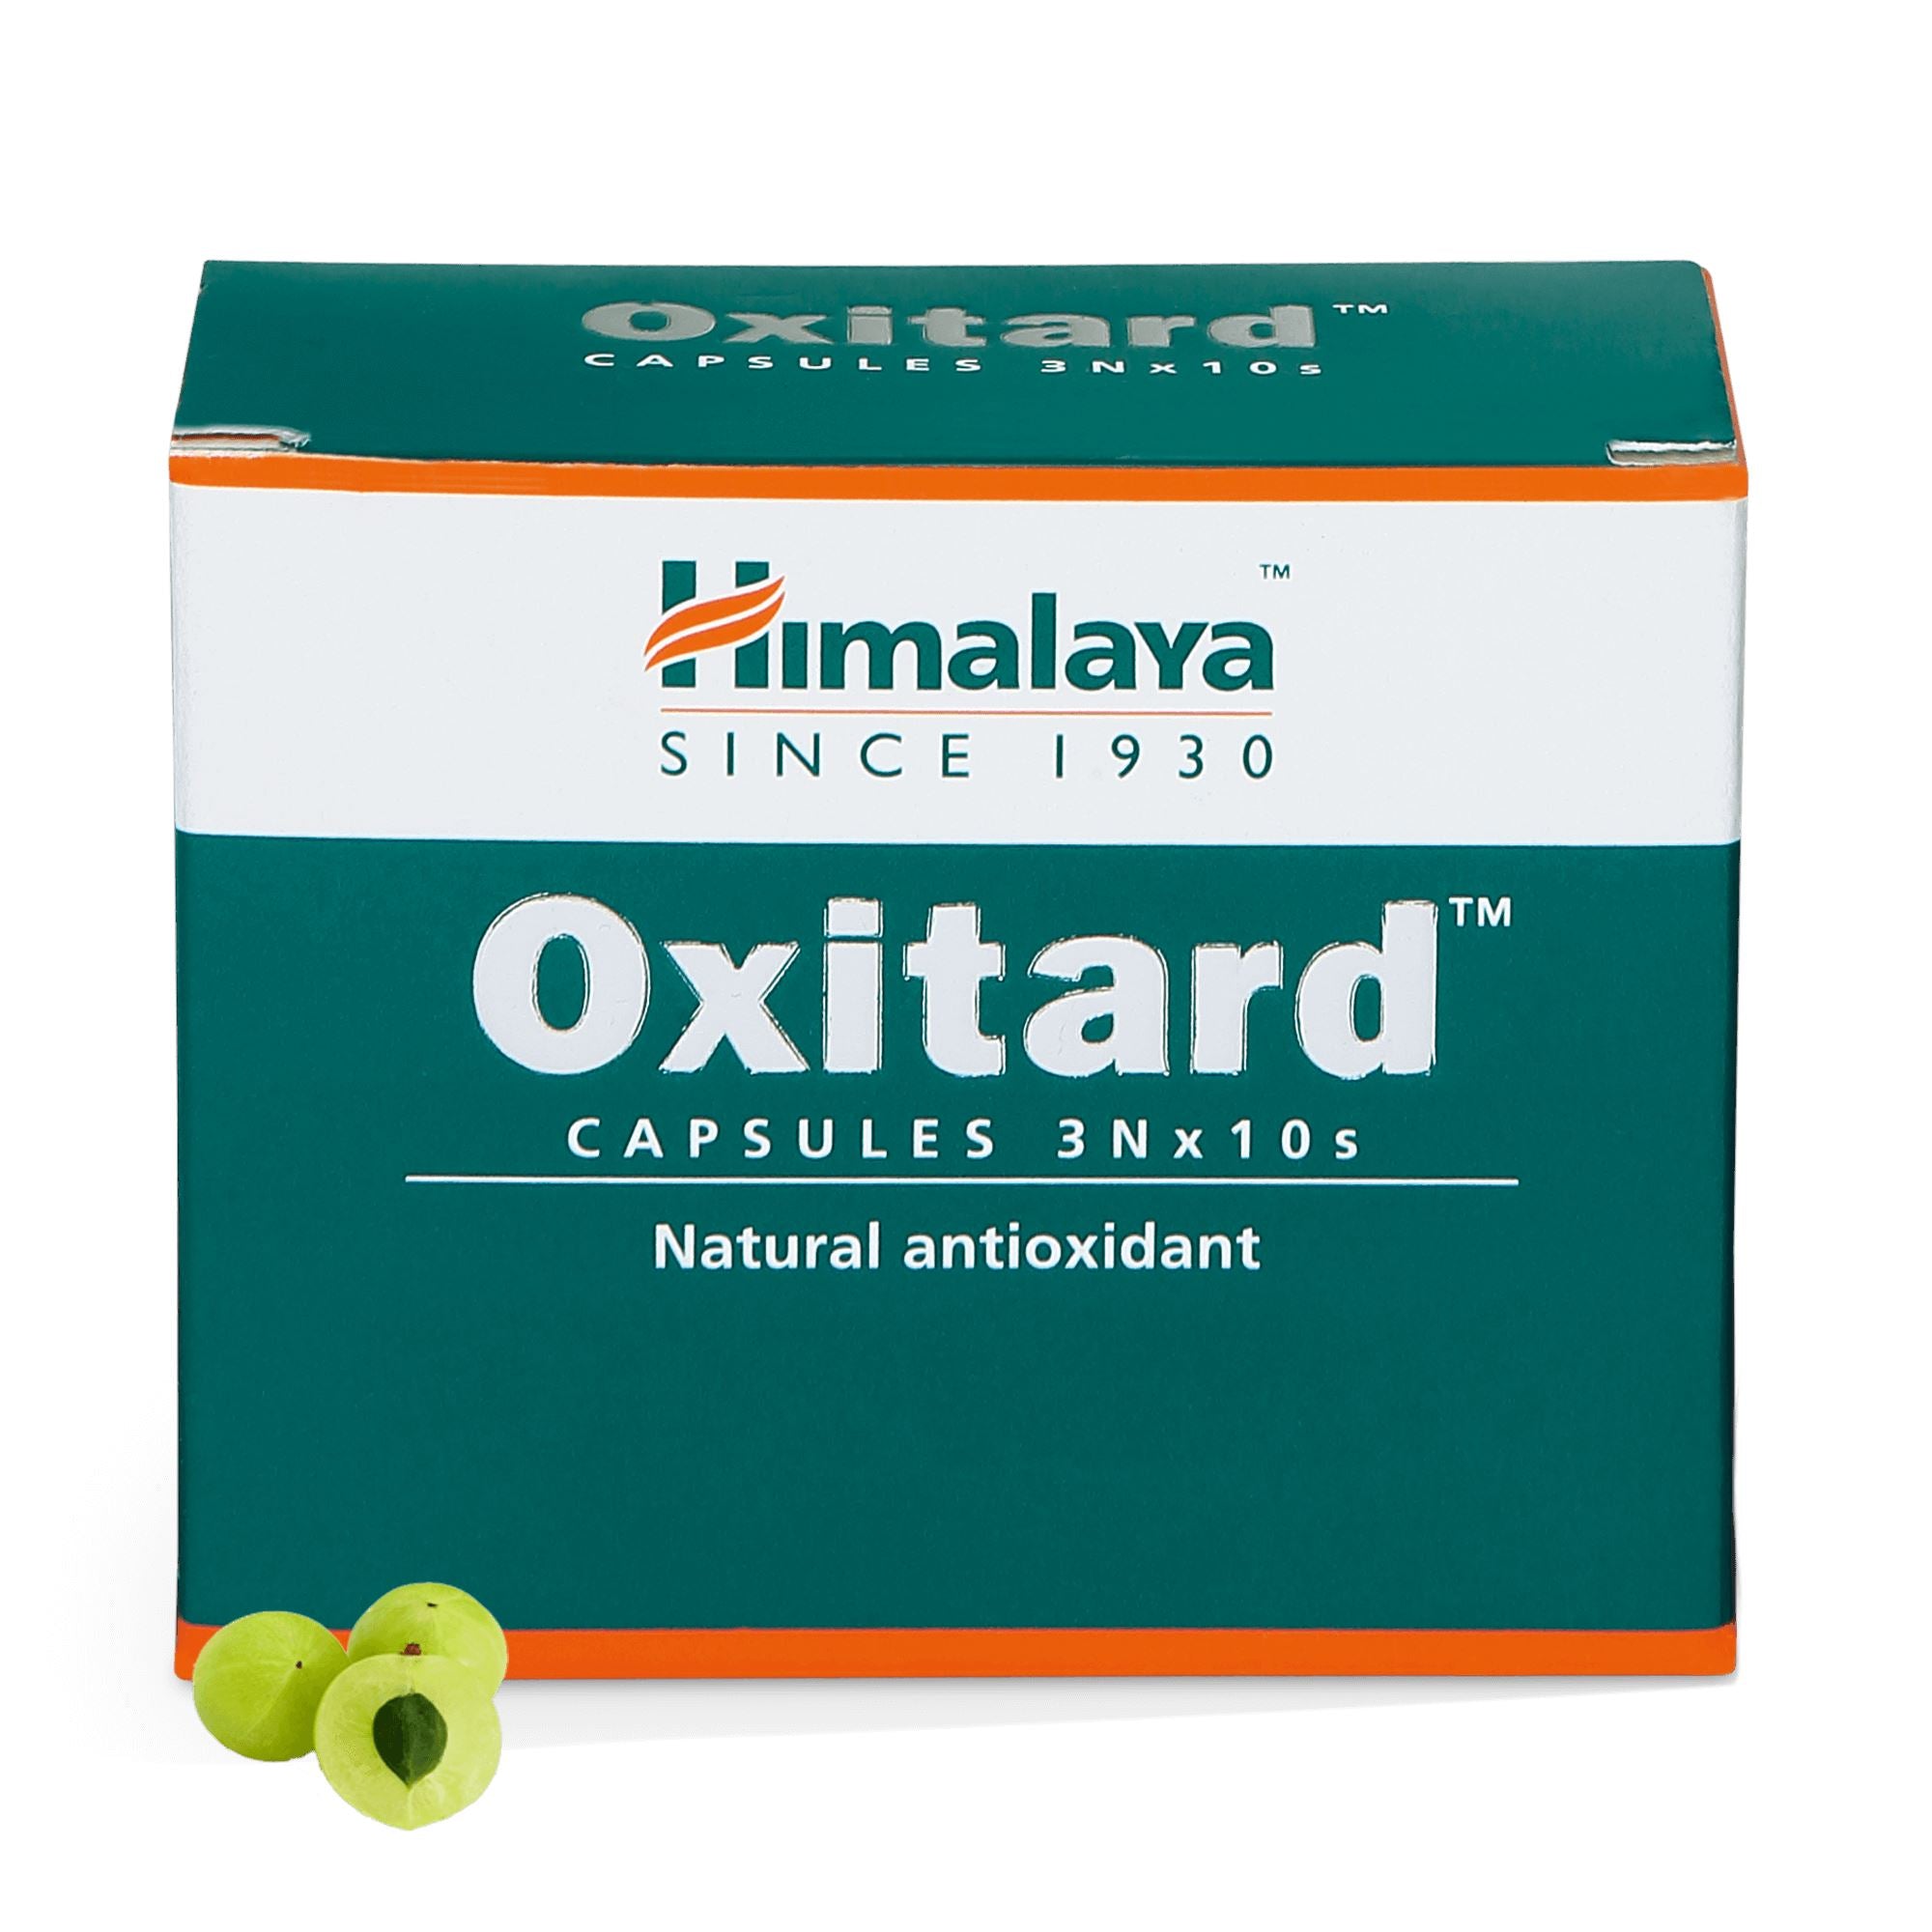 Himalaya Oxitard - Natural antioxidant